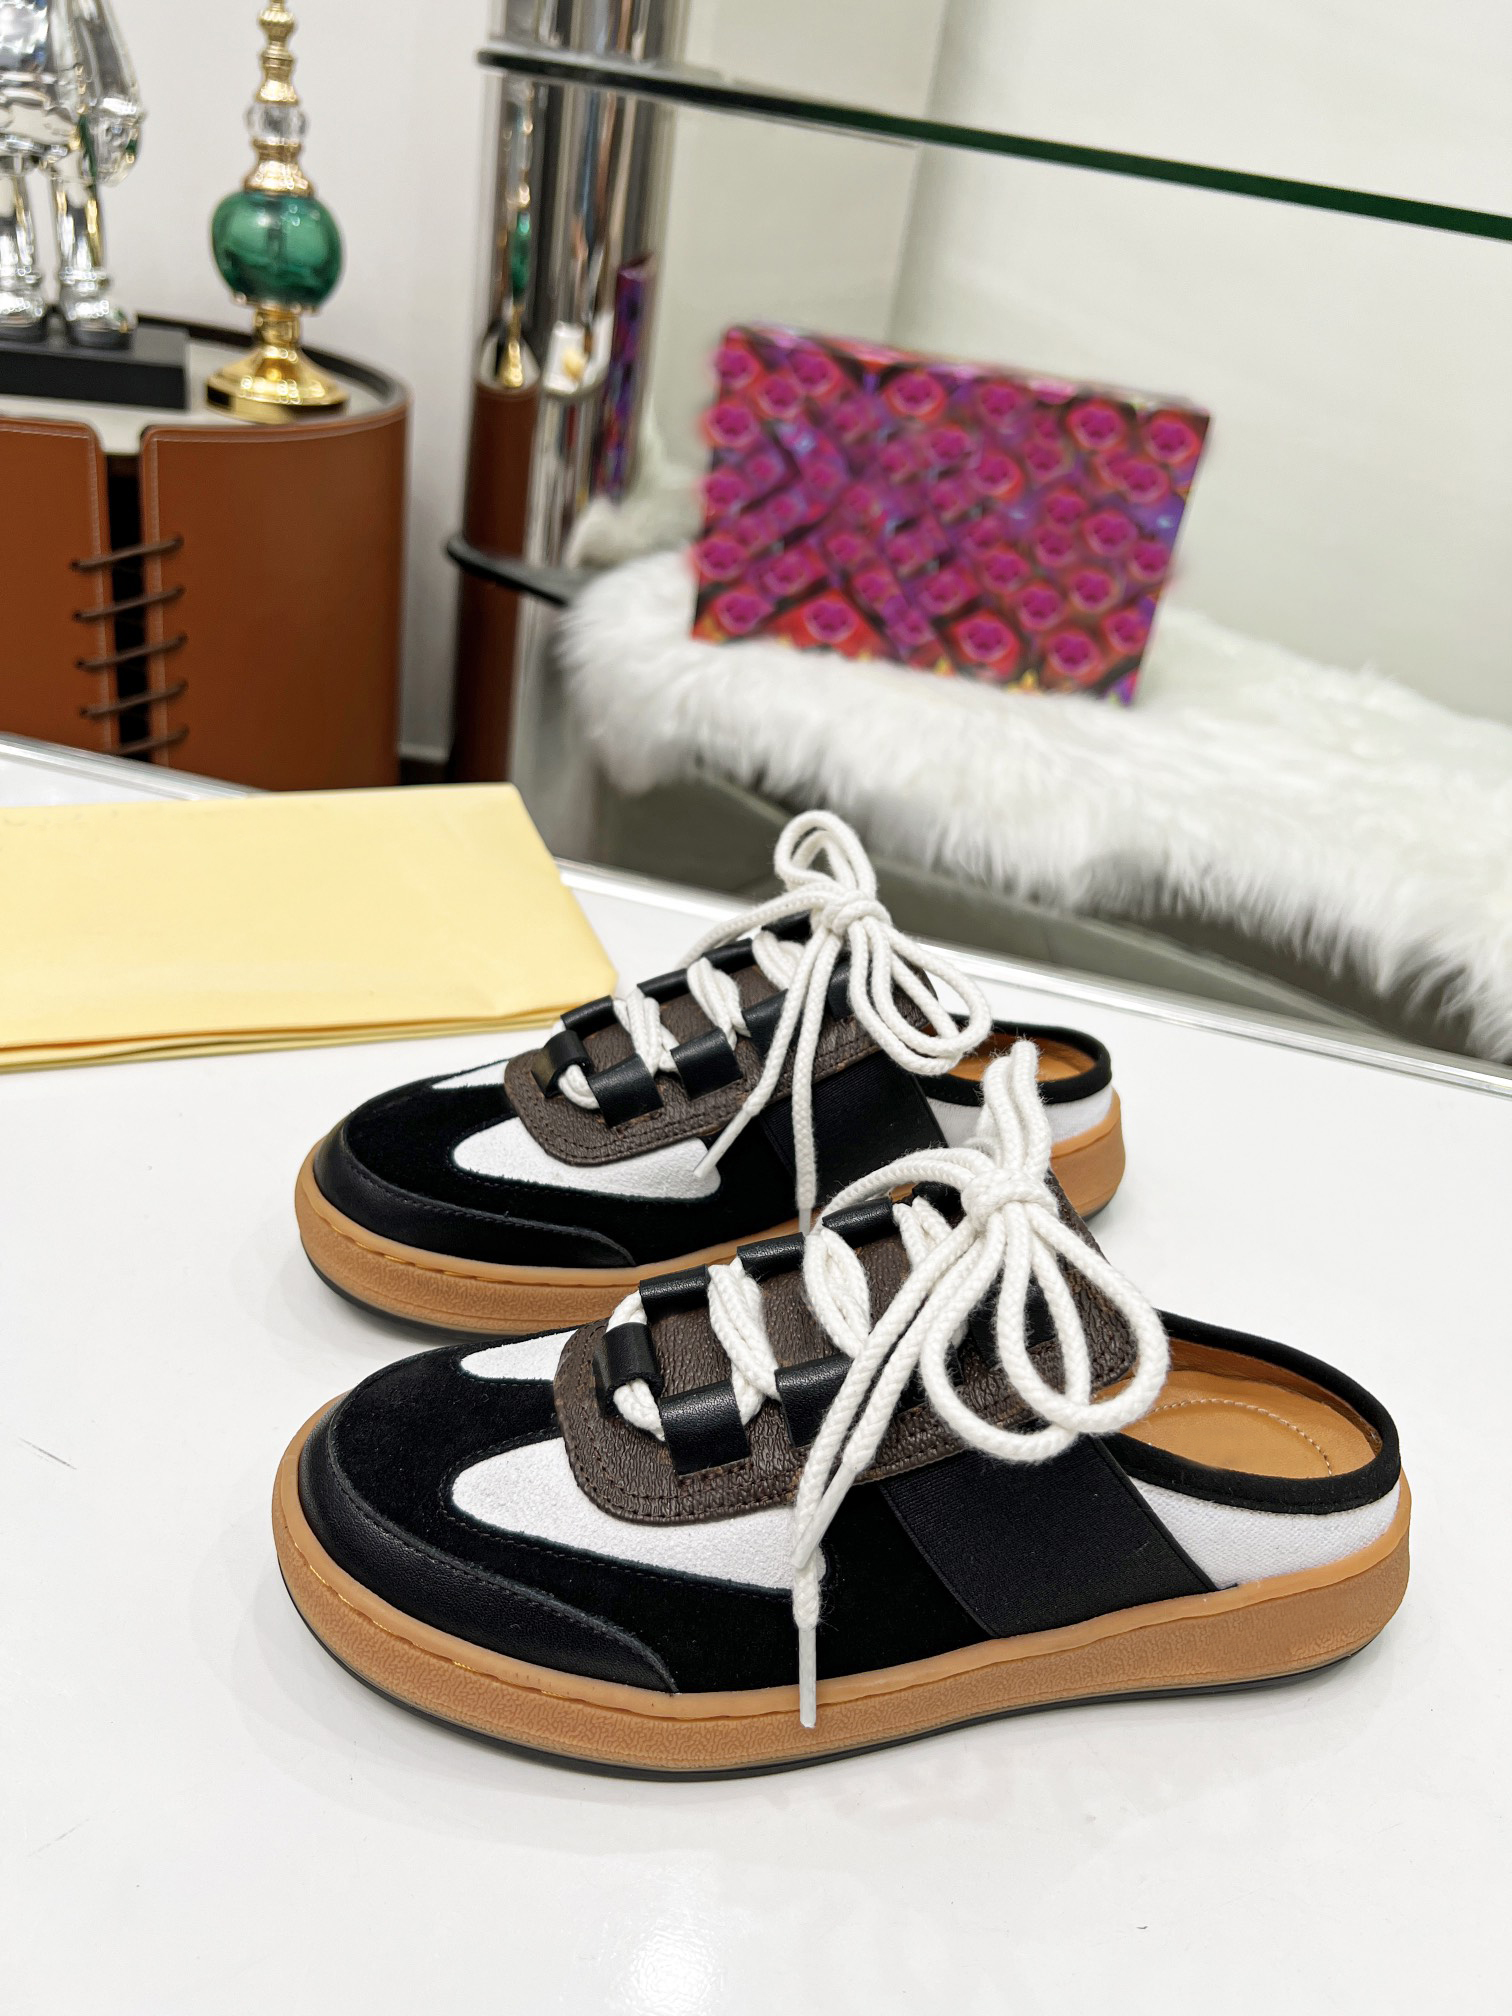 2022 Automne Slip-on Sneakers Designer Pantoufles à lacets Noir Brown Casual Chaussures Mode All-Match Baskets Pantoufles plates avec boîte taille 35-41